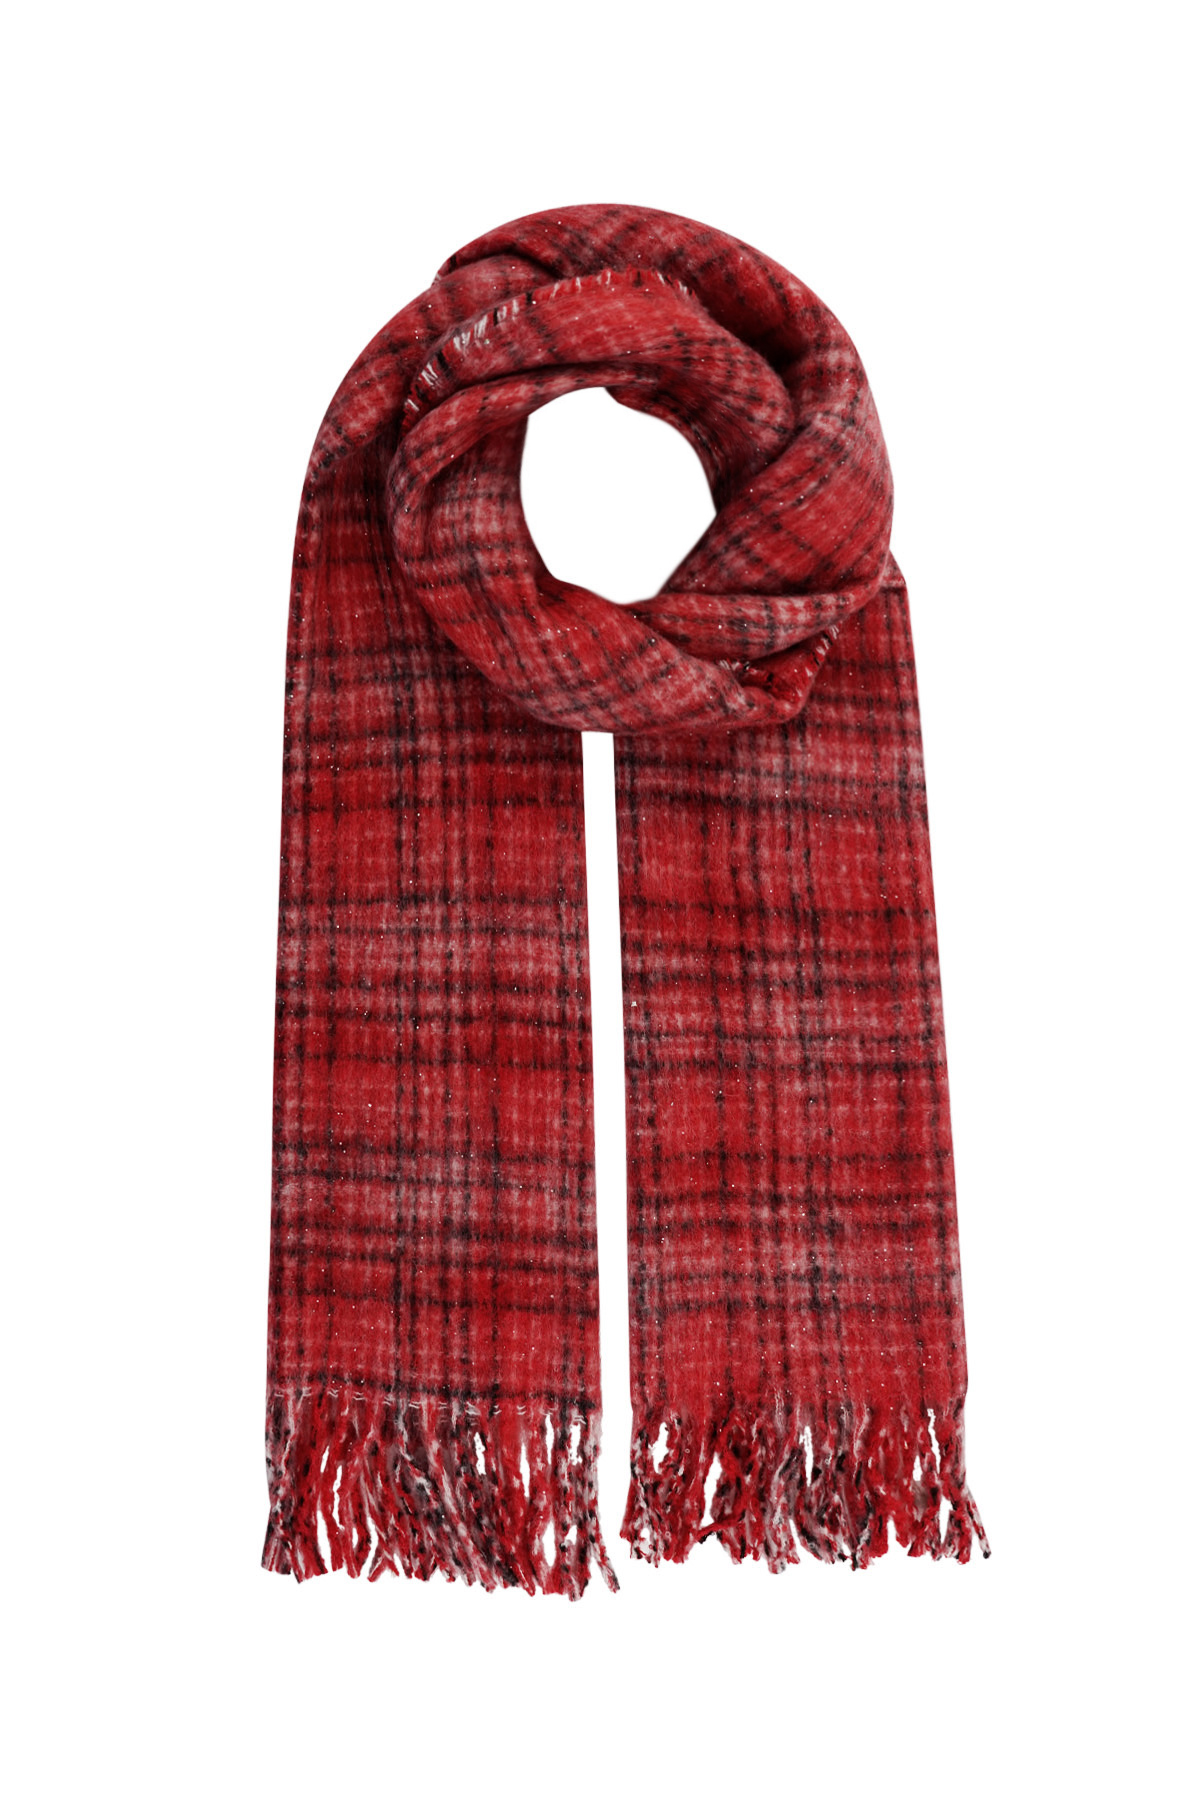 Calda sciarpa invernale a quadri - rossa h5 